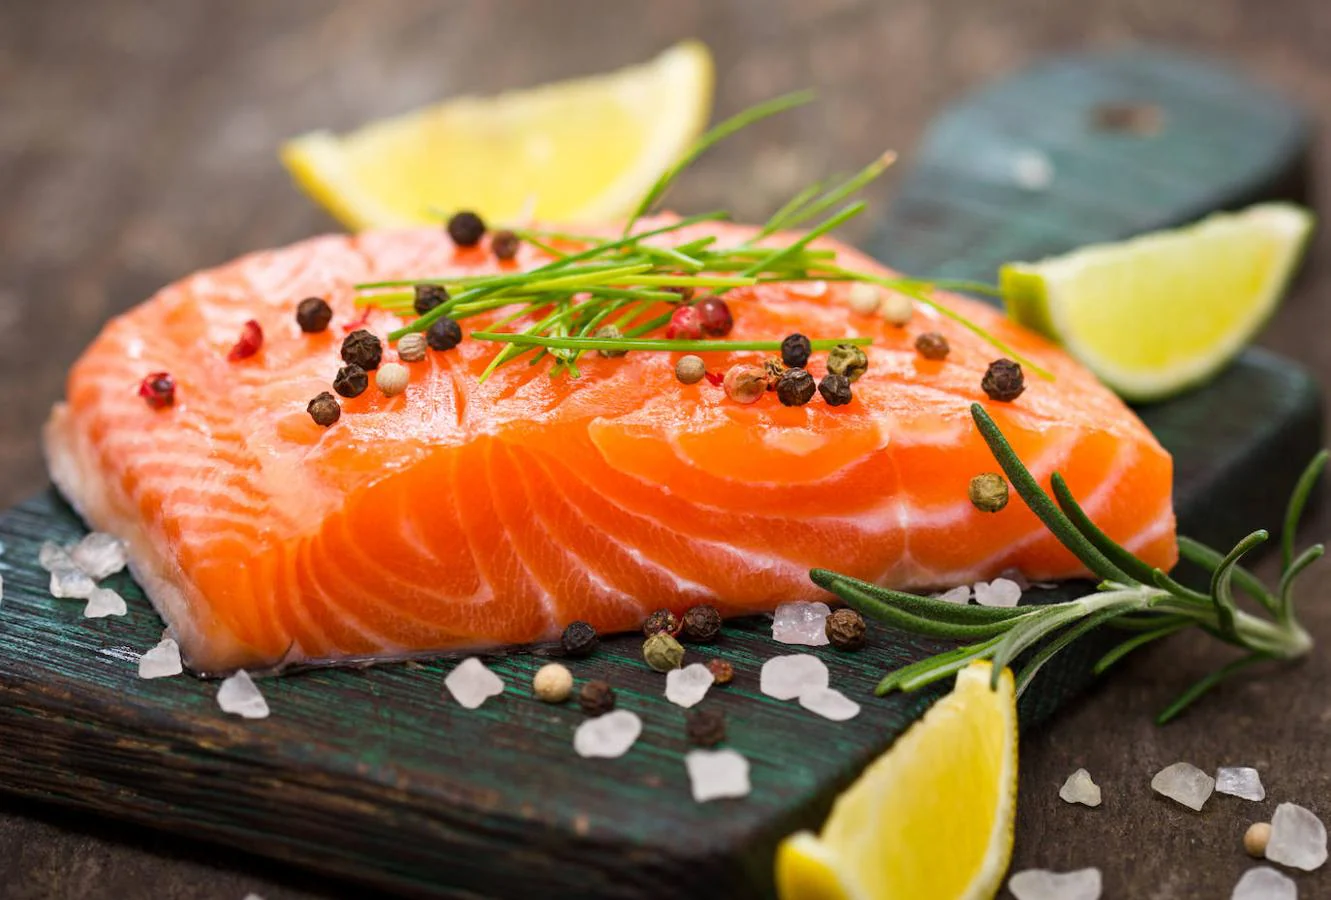 Salmón. Una fuente excelente de omega 3 son los pescados. En especial, el <a href="https://www.abc.es/bienestar/alimentacion/abci-salmon-alimentos-mas-saludables-para-anadir-dieta-201910031317_noticia.html">salmón </a>es una opción muy interesante, pues no solo es rico en este ácido graso, sino que aporta, por ejemplo, una gran cantidad de proteína a la dieta. Exactamente, 18.4 gramos por cada 100, según datos de la Base de Datos Española de Composición de Alimentos (Bedca). También destaca por ser rico en potasio: 310 microgramos por cada 100 gramos.